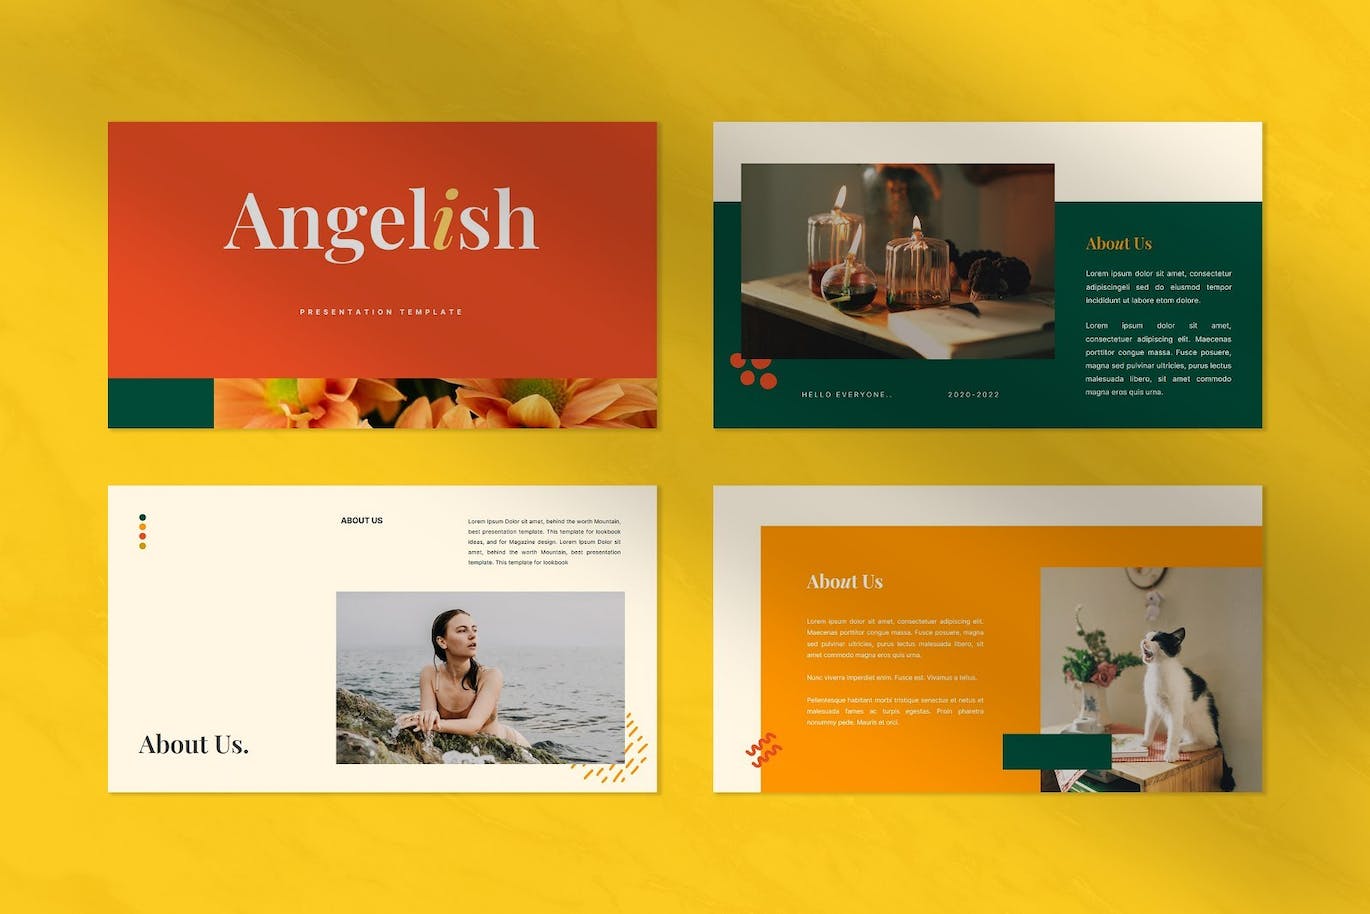 创意时尚宣传材料Powerpoint模板 Angelish – Creative Fashion Angelish Powerpoint 幻灯图表 第8张